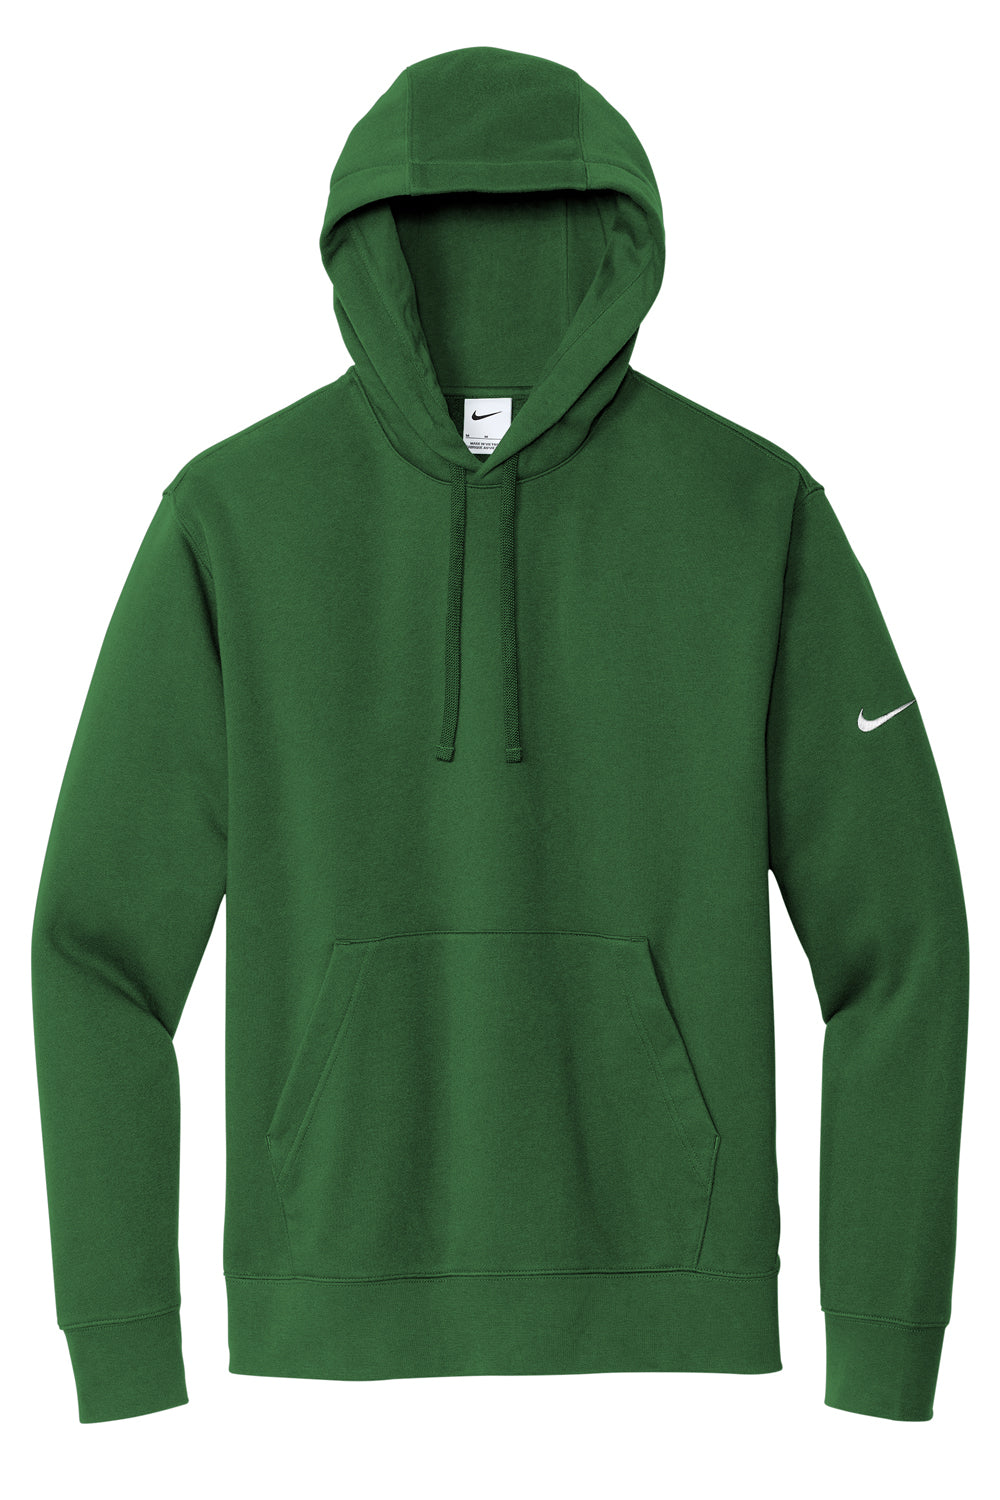 Nike NKDR1499 Mens Club Fleece Hooded Sweatshirt Hoodie Gorge Green Flat Front